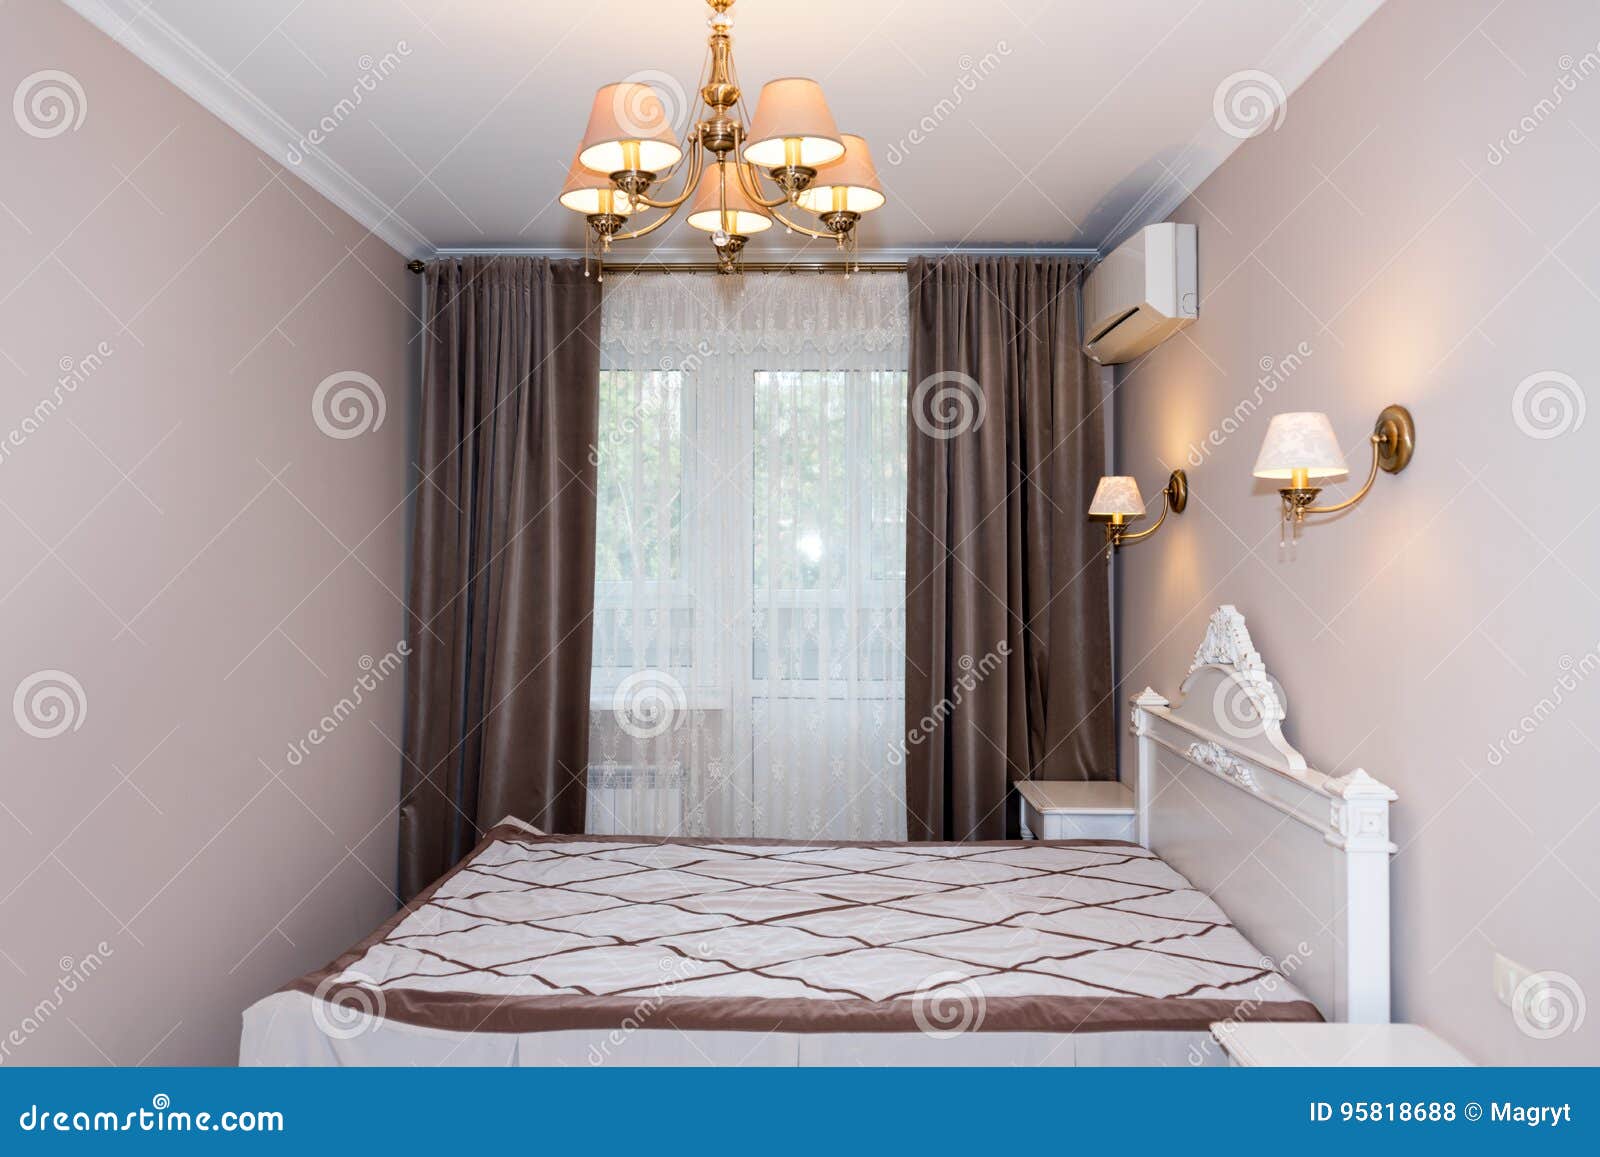 Пастельные цвета в интерьере спальни